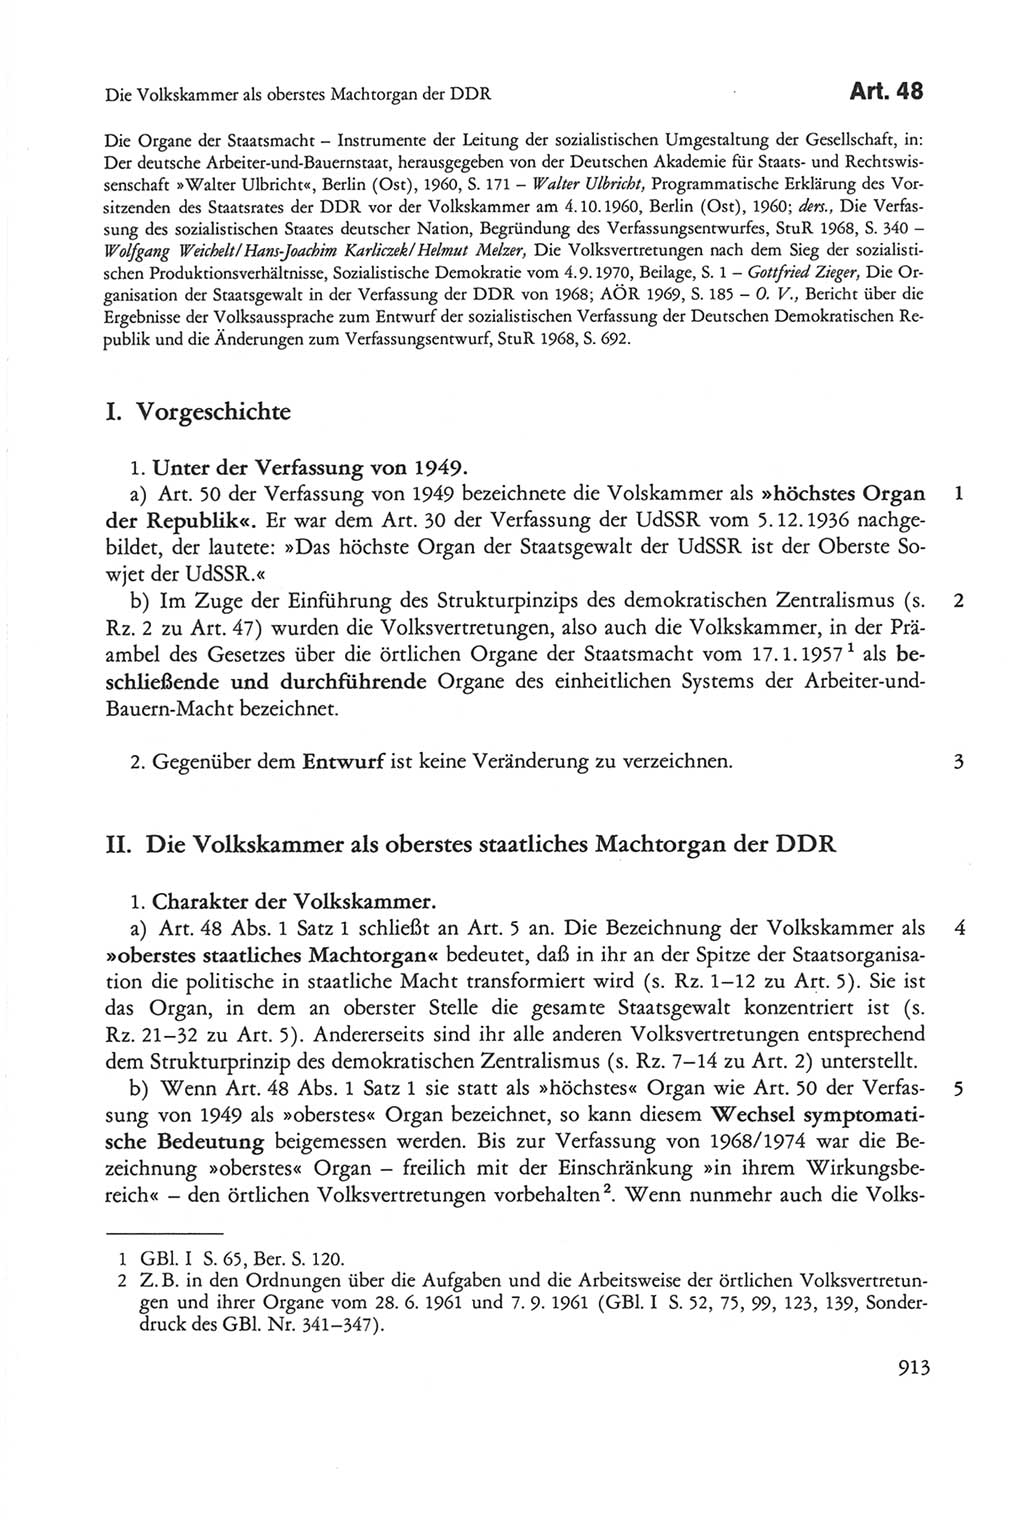 Die sozialistische Verfassung der Deutschen Demokratischen Republik (DDR), Kommentar mit einem Nachtrag 1997, Seite 913 (Soz. Verf. DDR Komm. Nachtr. 1997, S. 913)